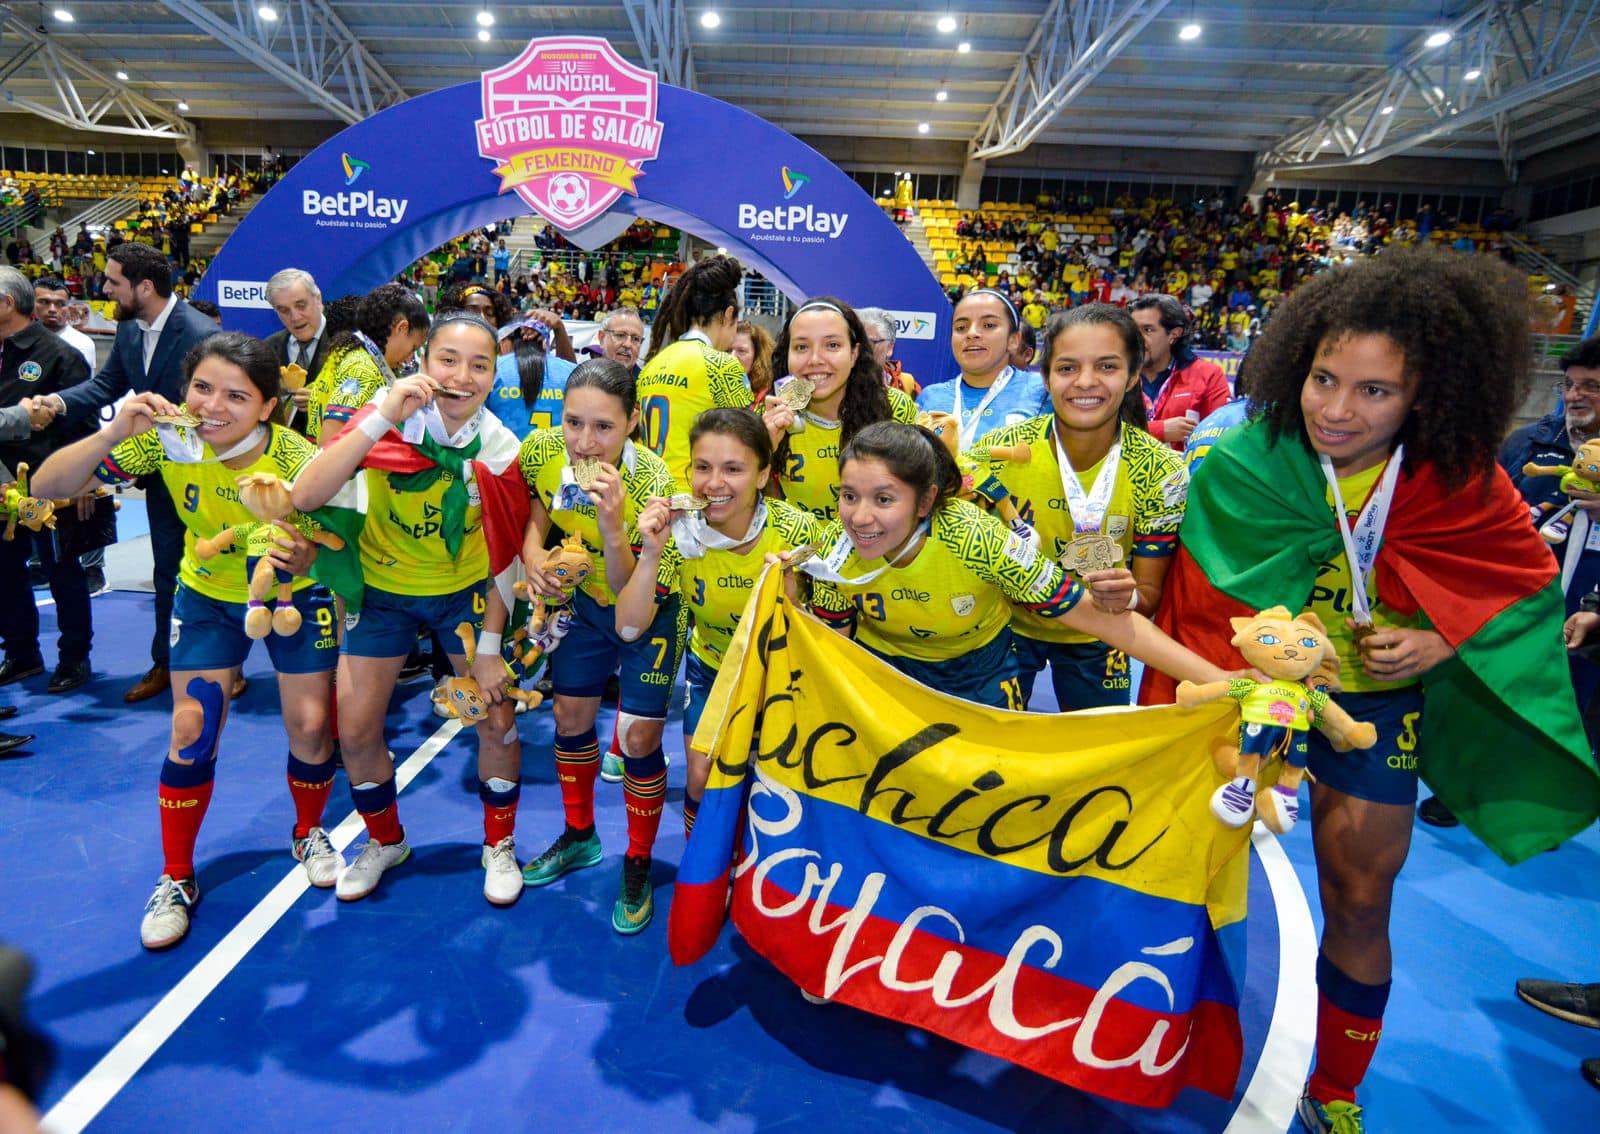 Colombia se coronó campeón del Mundial de Fútbol de Salón femenino en Mosquera, Cundinamarca. Celebran el título Patricia Puchigay, Yeni Ríos, Gledys Bello, Shandira Wright, Yurani Marín, Laura Tamayo, Paola Estrada y Carolina Jiménez.